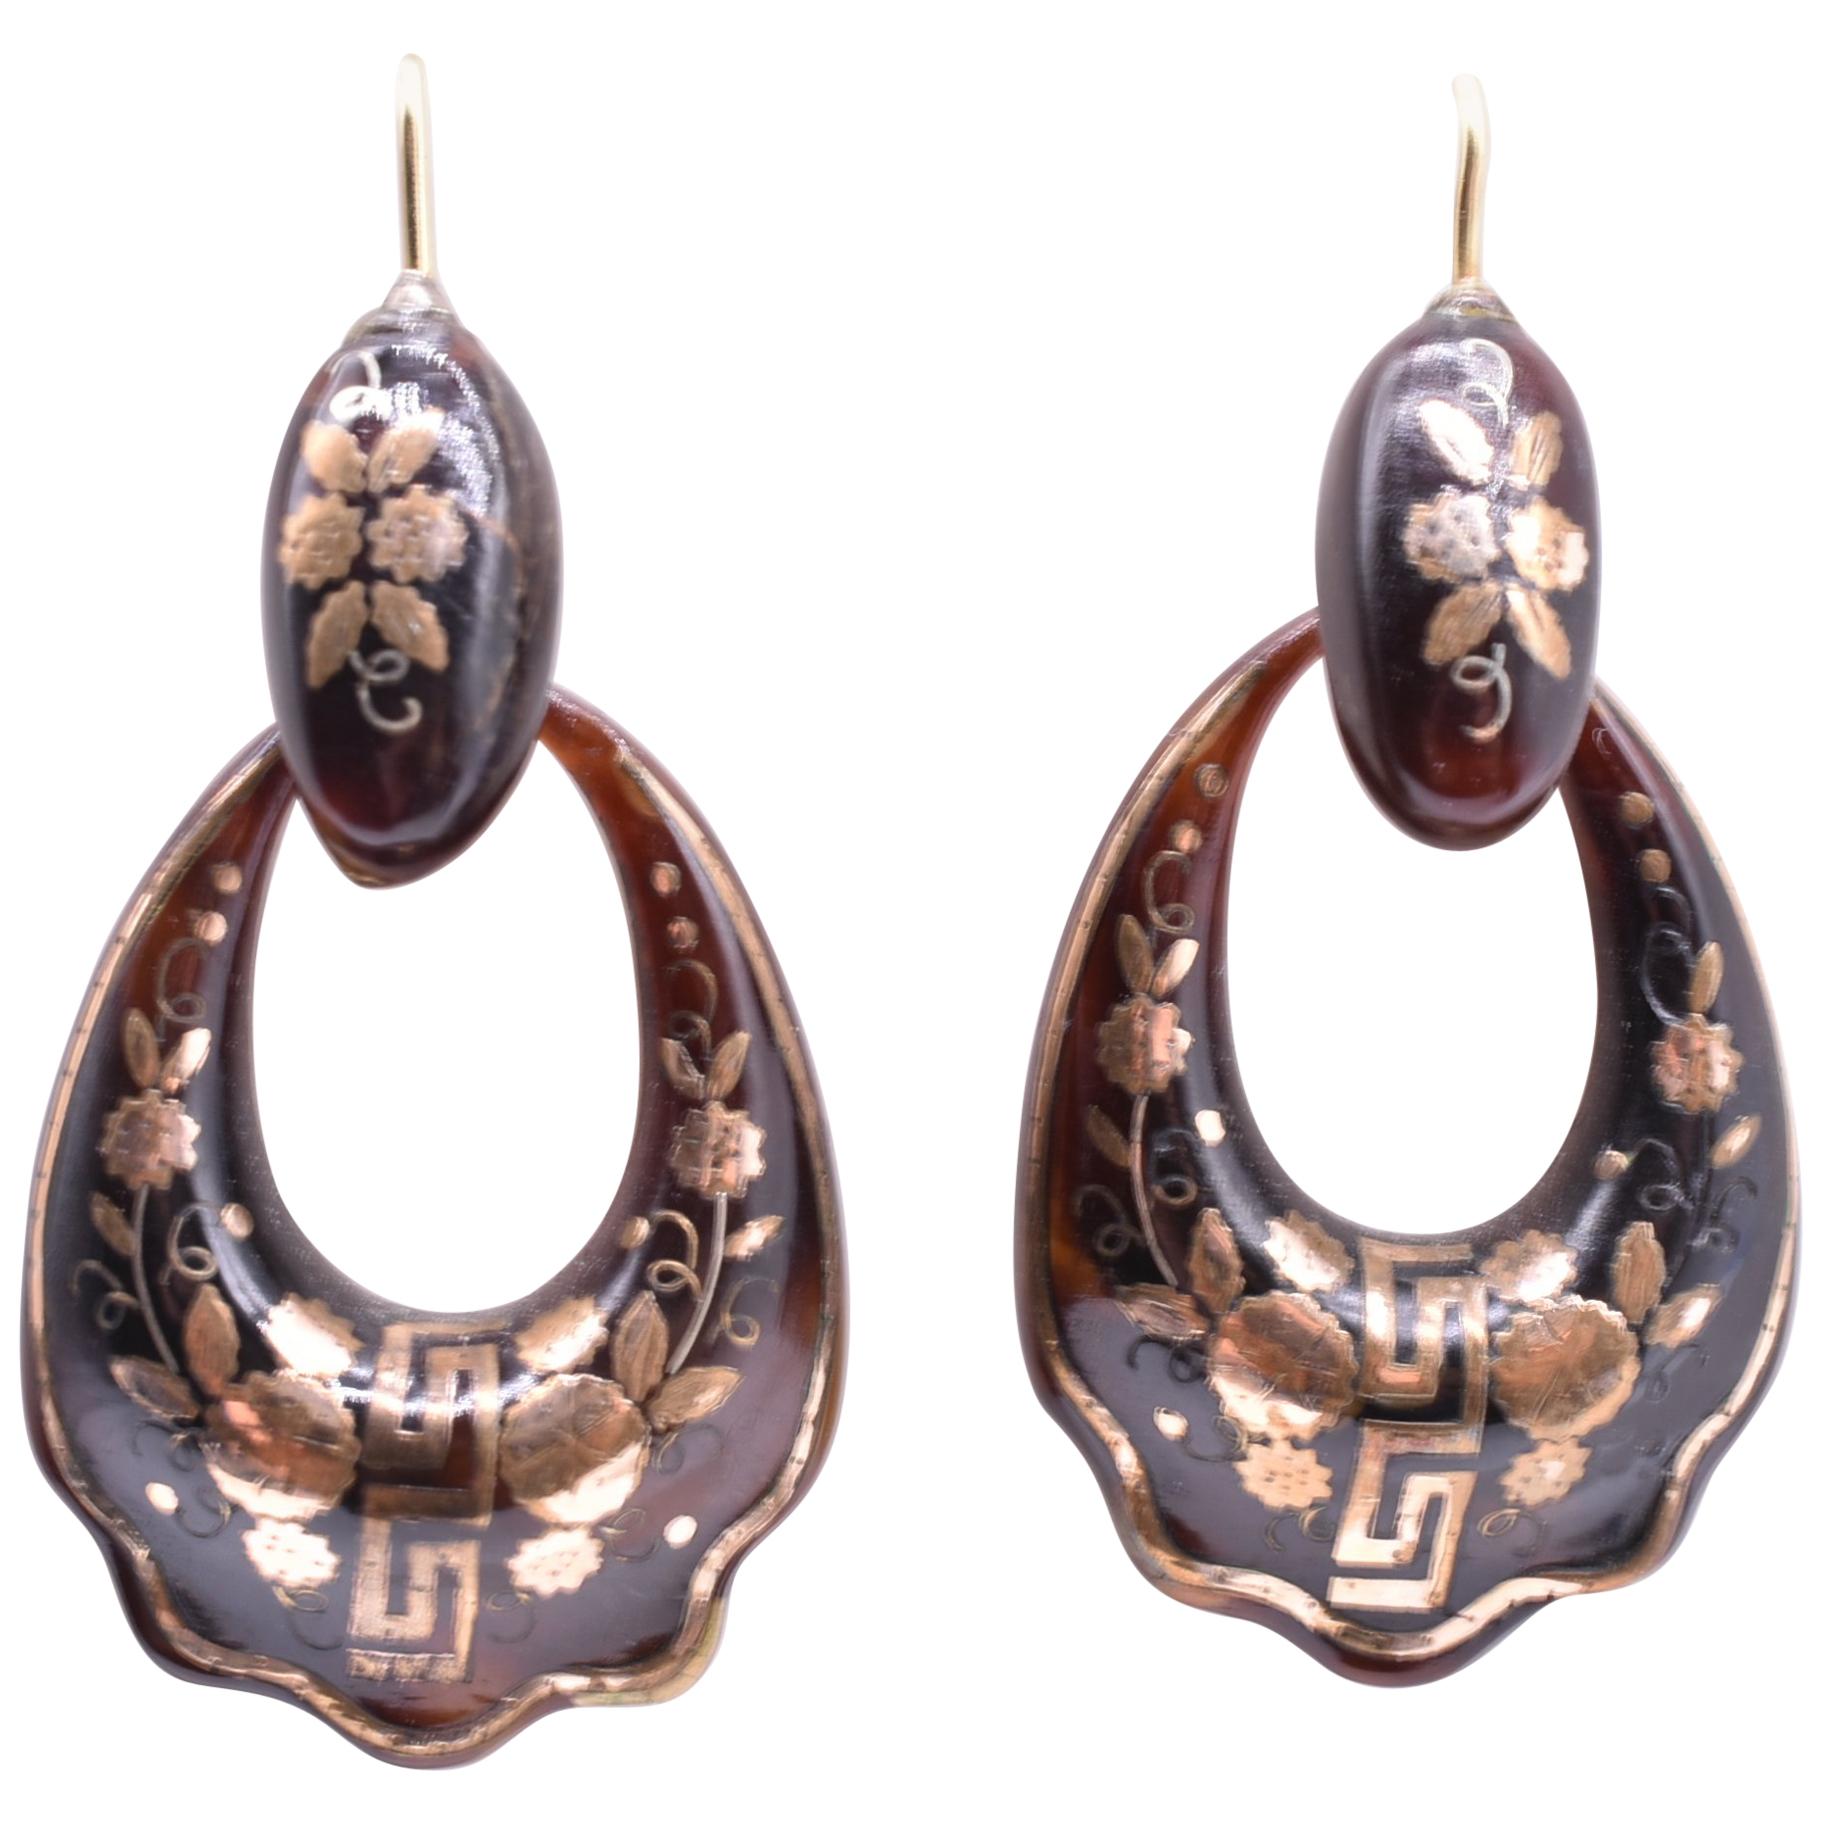 Pique Greek Key Hoop Earrings, circa 1870